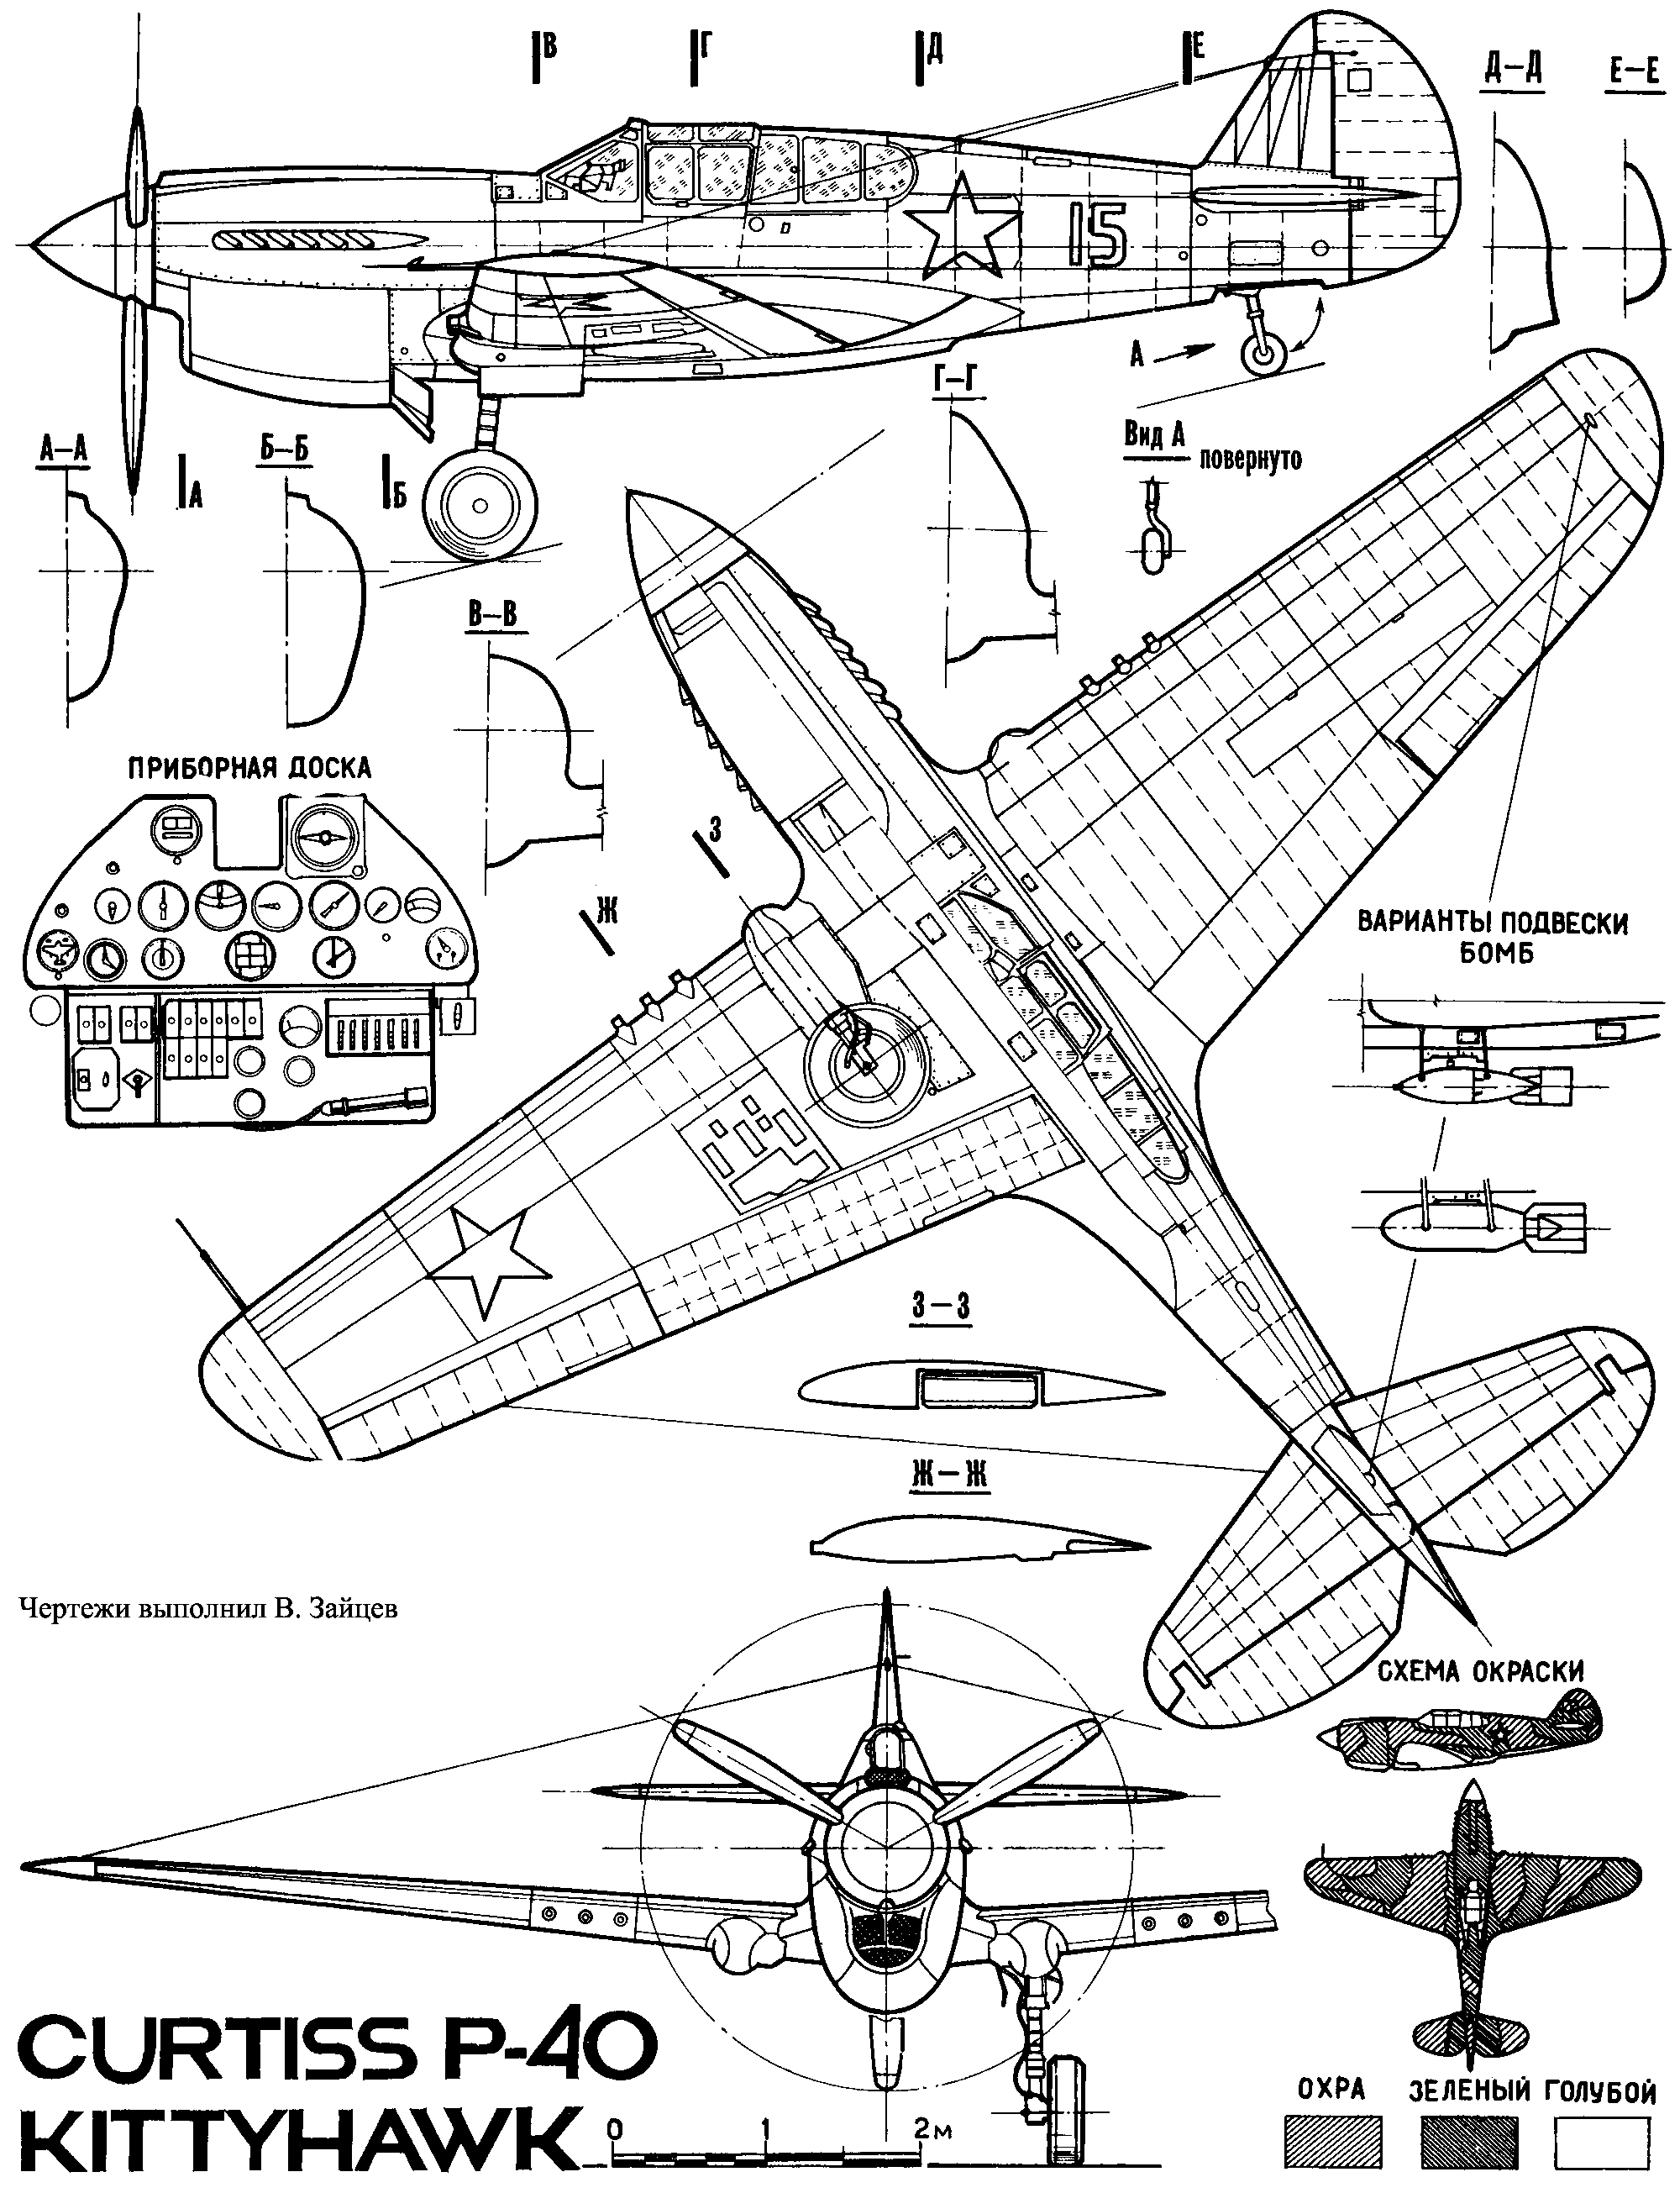 Чертежи истребителя P-40 Kittyhawk